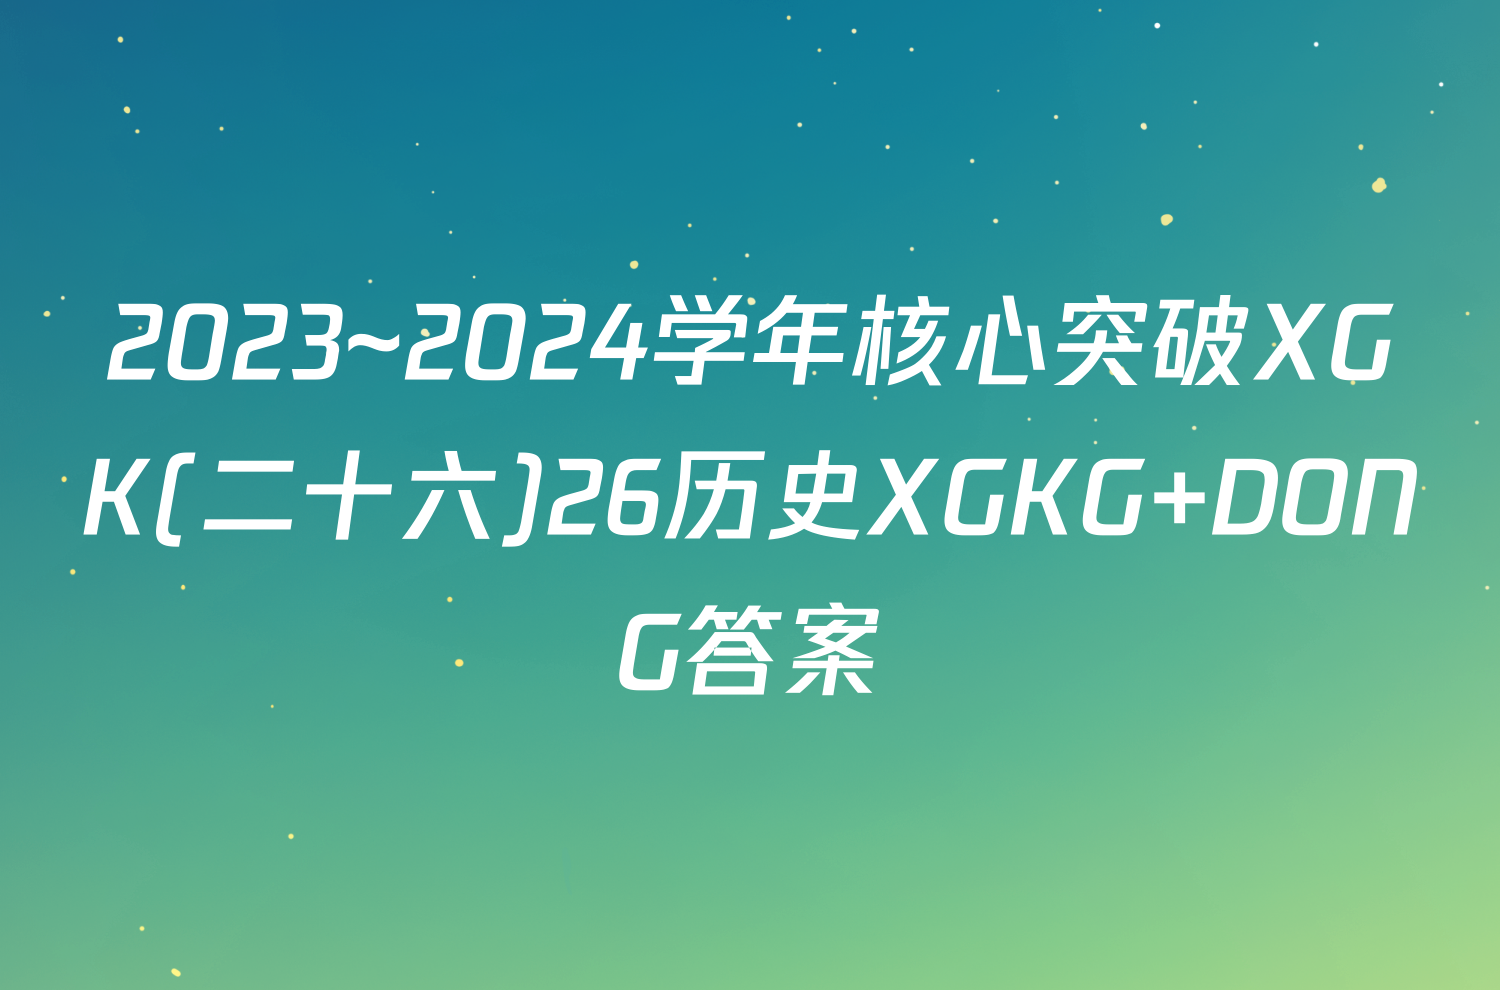 2023~2024学年核心突破XGK(二十六)26历史XGKG DONG答案